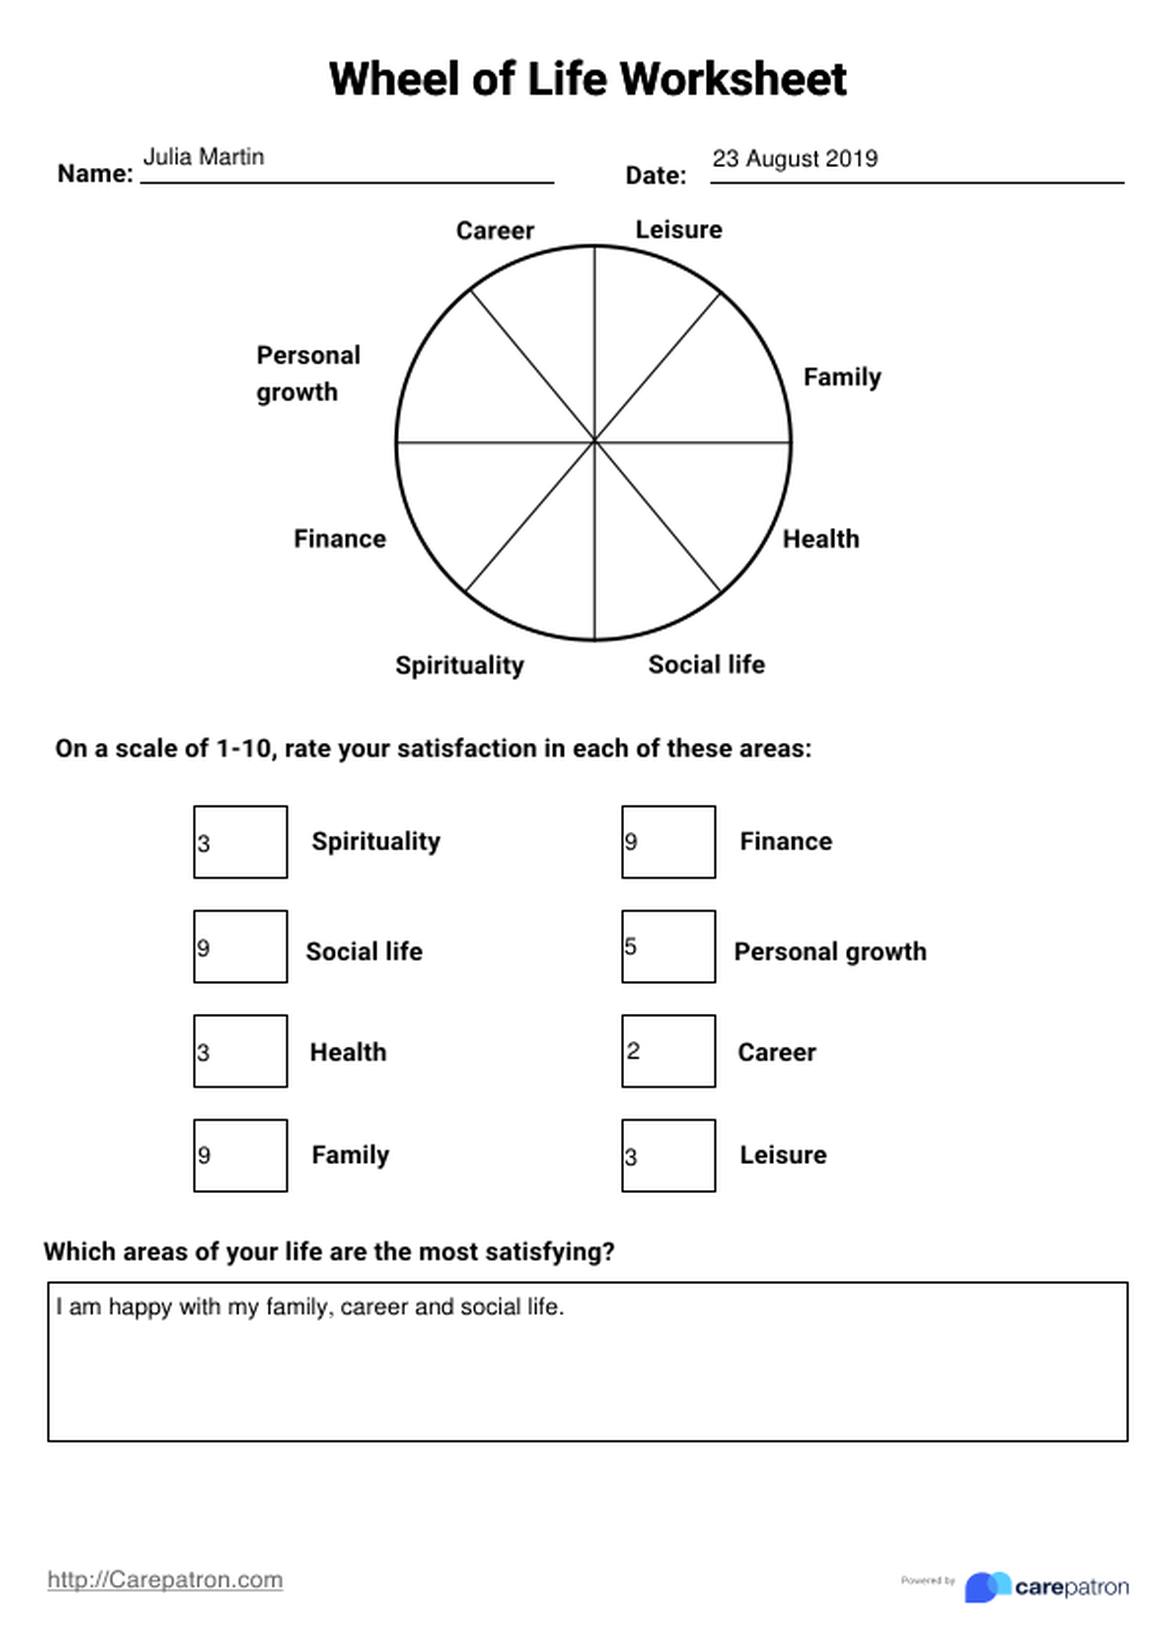 Formulario de Evaluación de la Rueda de la Vida PDF Example